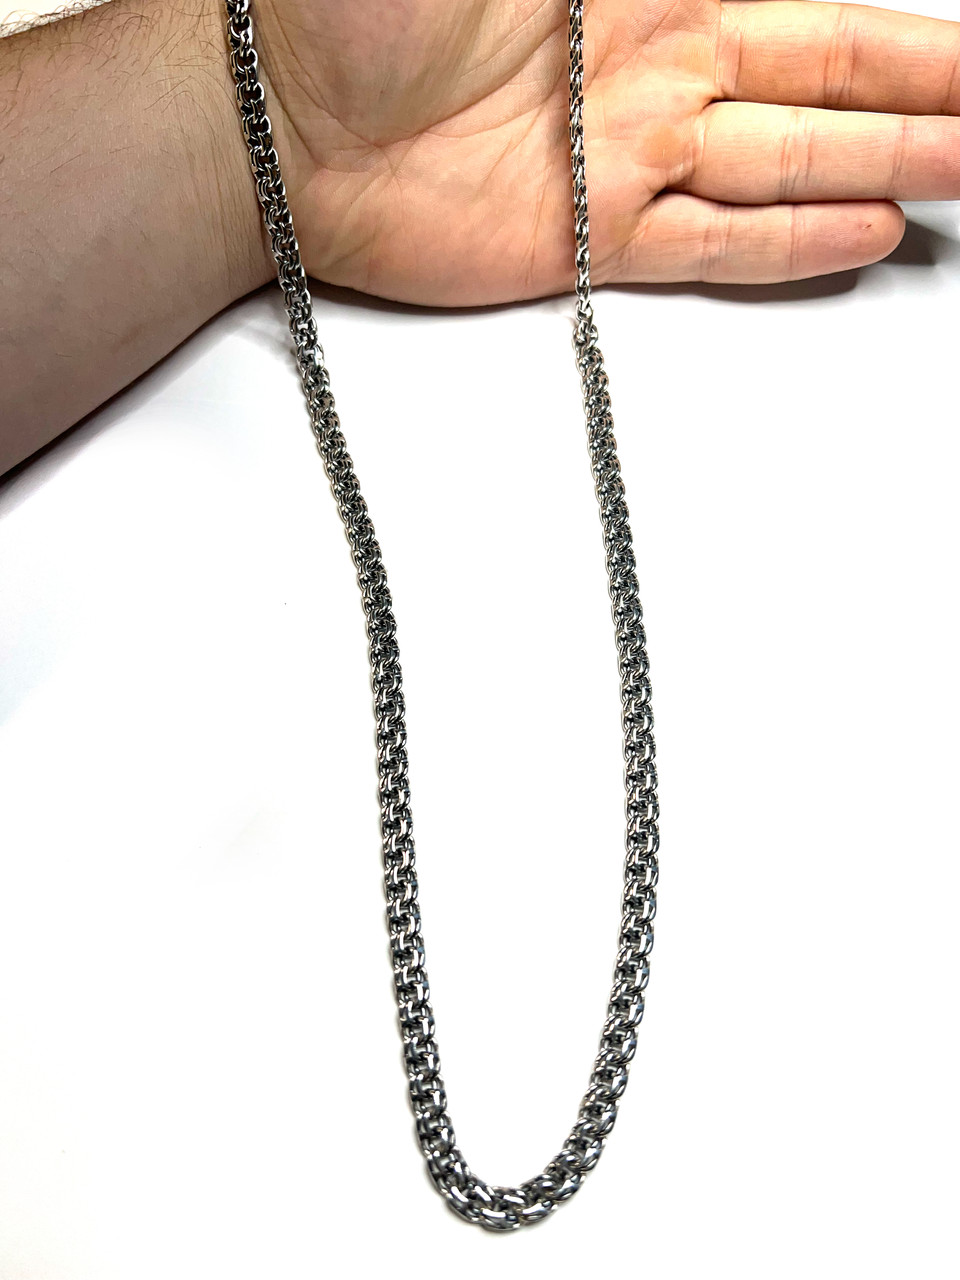 Серебряные цепочки мужские и женские 925 пробы, Большая цепь на шею из серебра весом 44г 65см